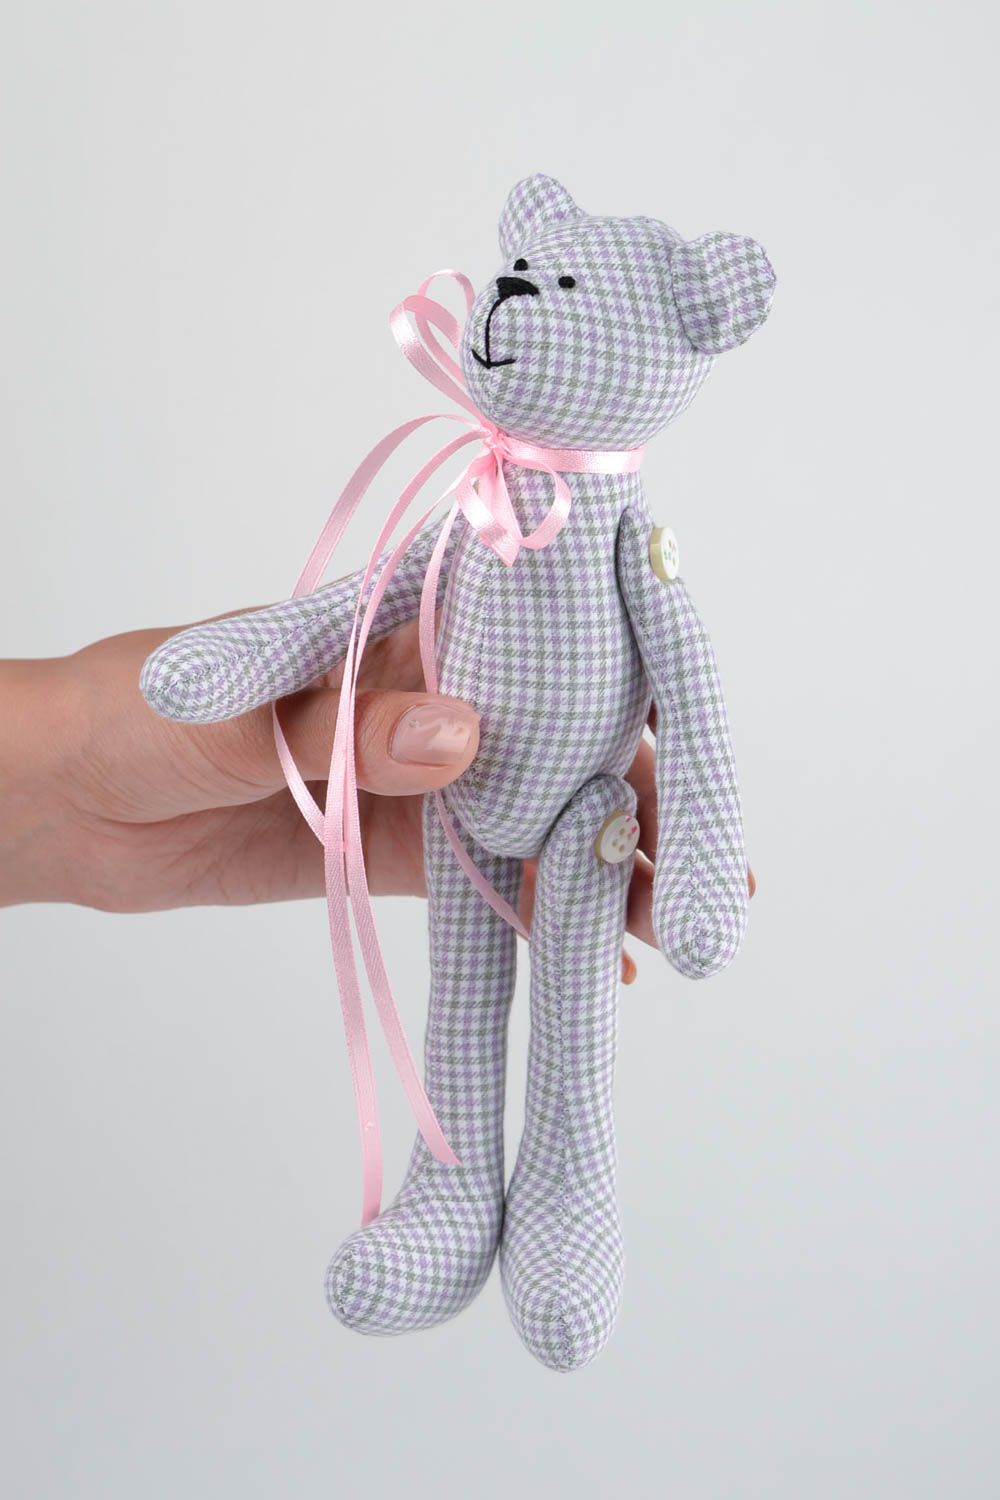 Игрушка мишка из хлопка игрушка ручной работы с лентой интересный подарок фото 2